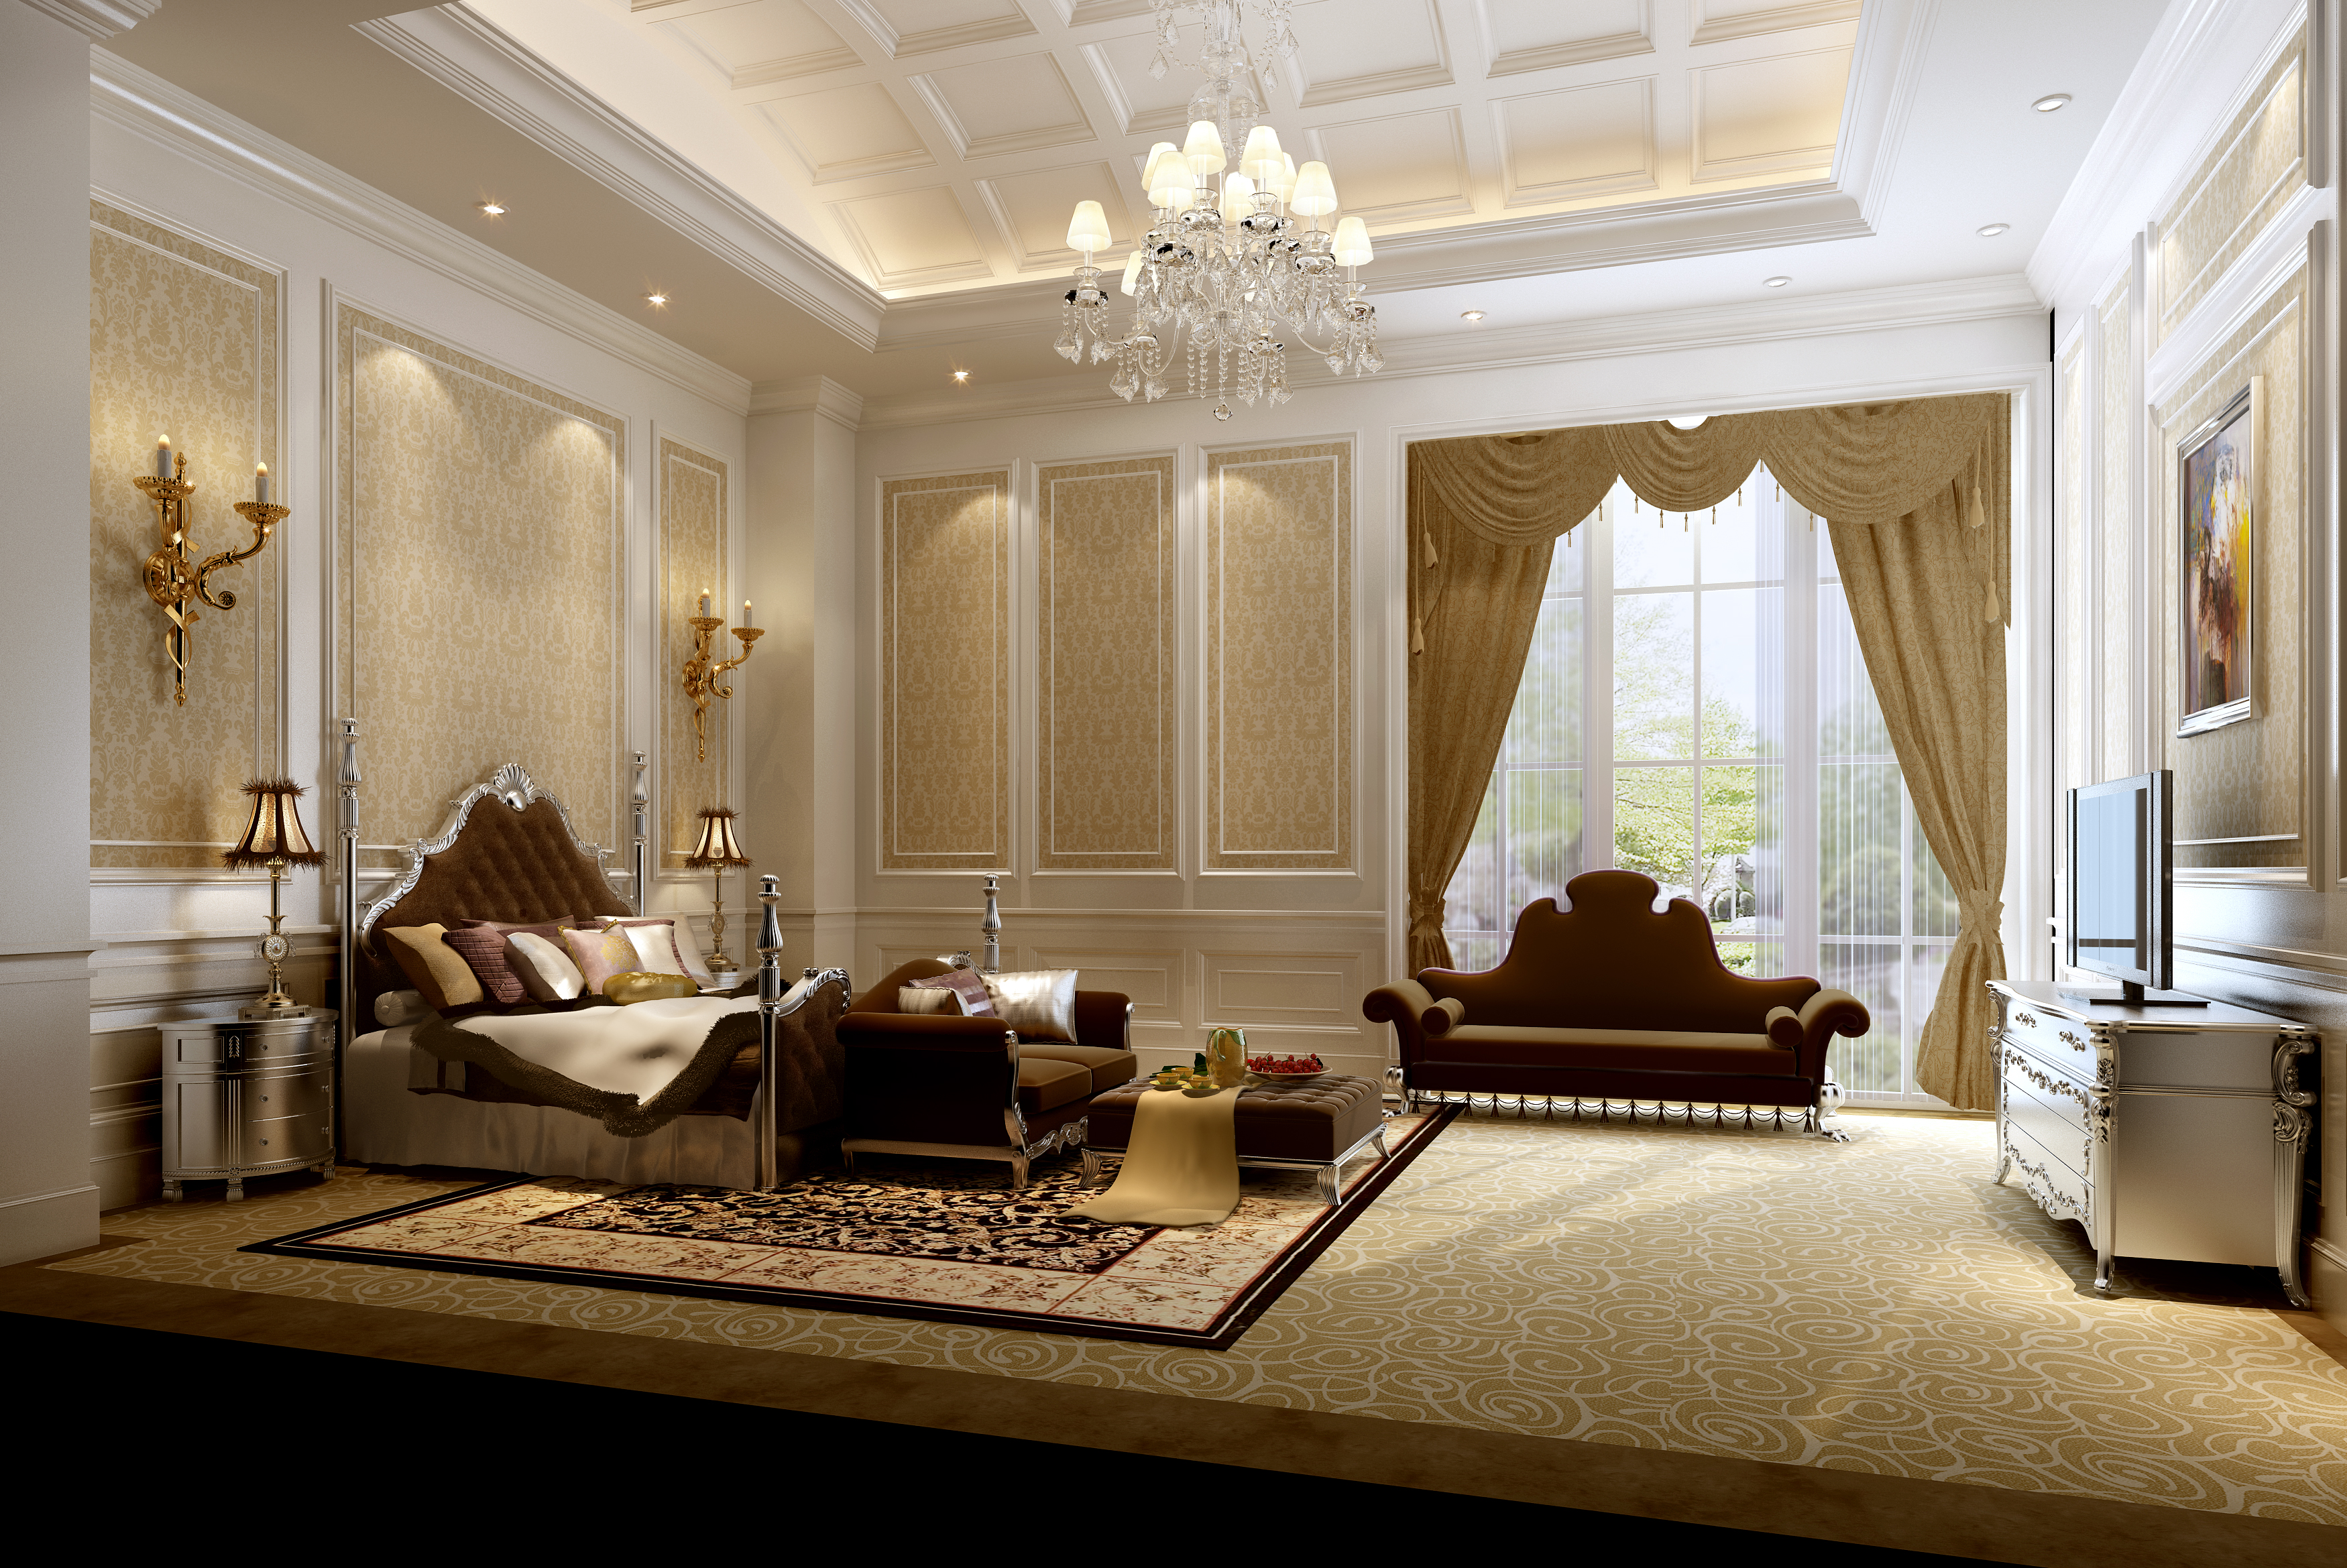 luxury bedrooms luxurious bedrooms pictures QGNOOUN